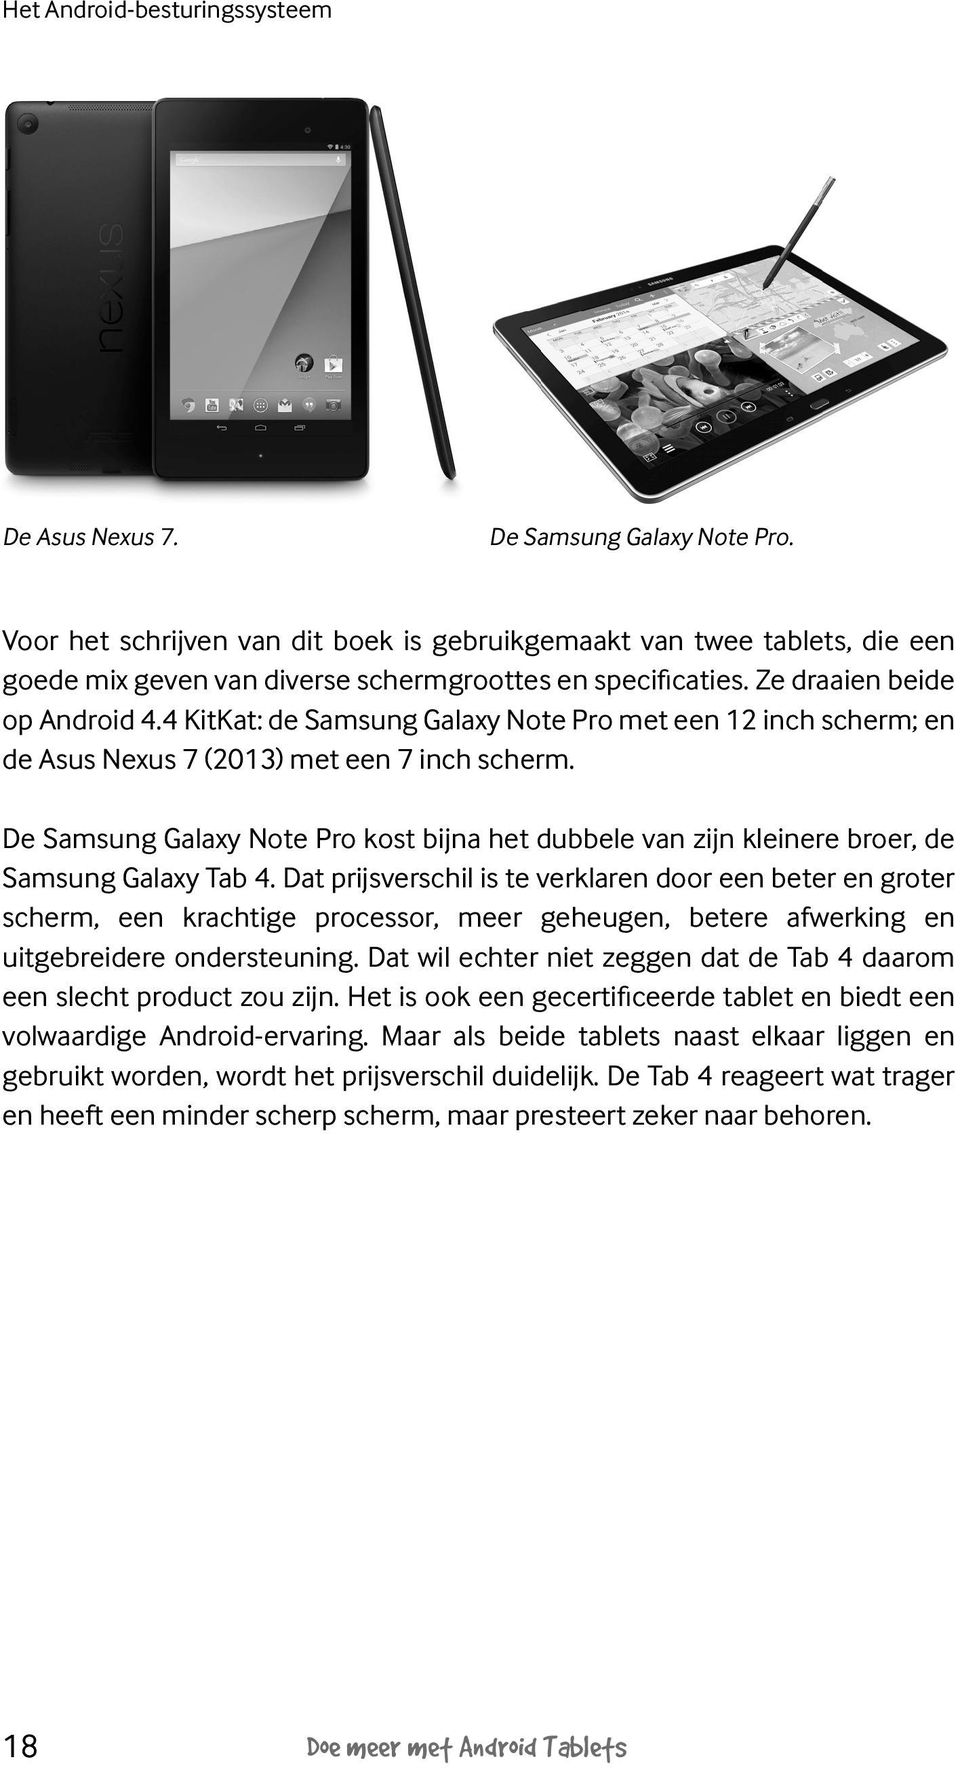 4 KitKat: de Samsung Galaxy Note Pro met een 12 inch scherm; en de Asus Nexus 7 (2013) met een 7 inch scherm.